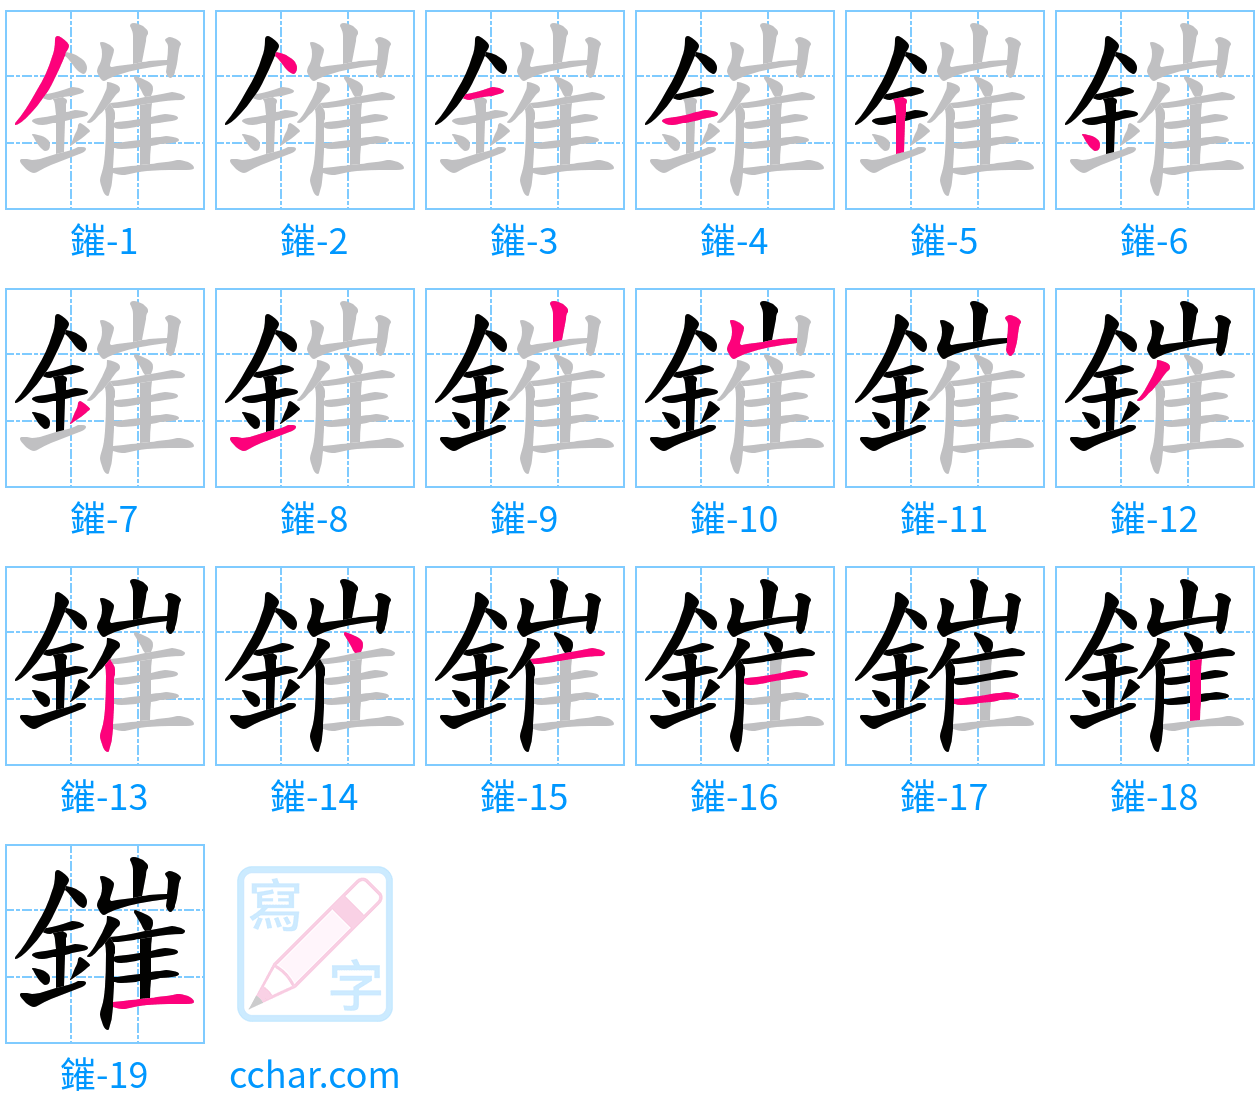 鏙 stroke order step-by-step diagram